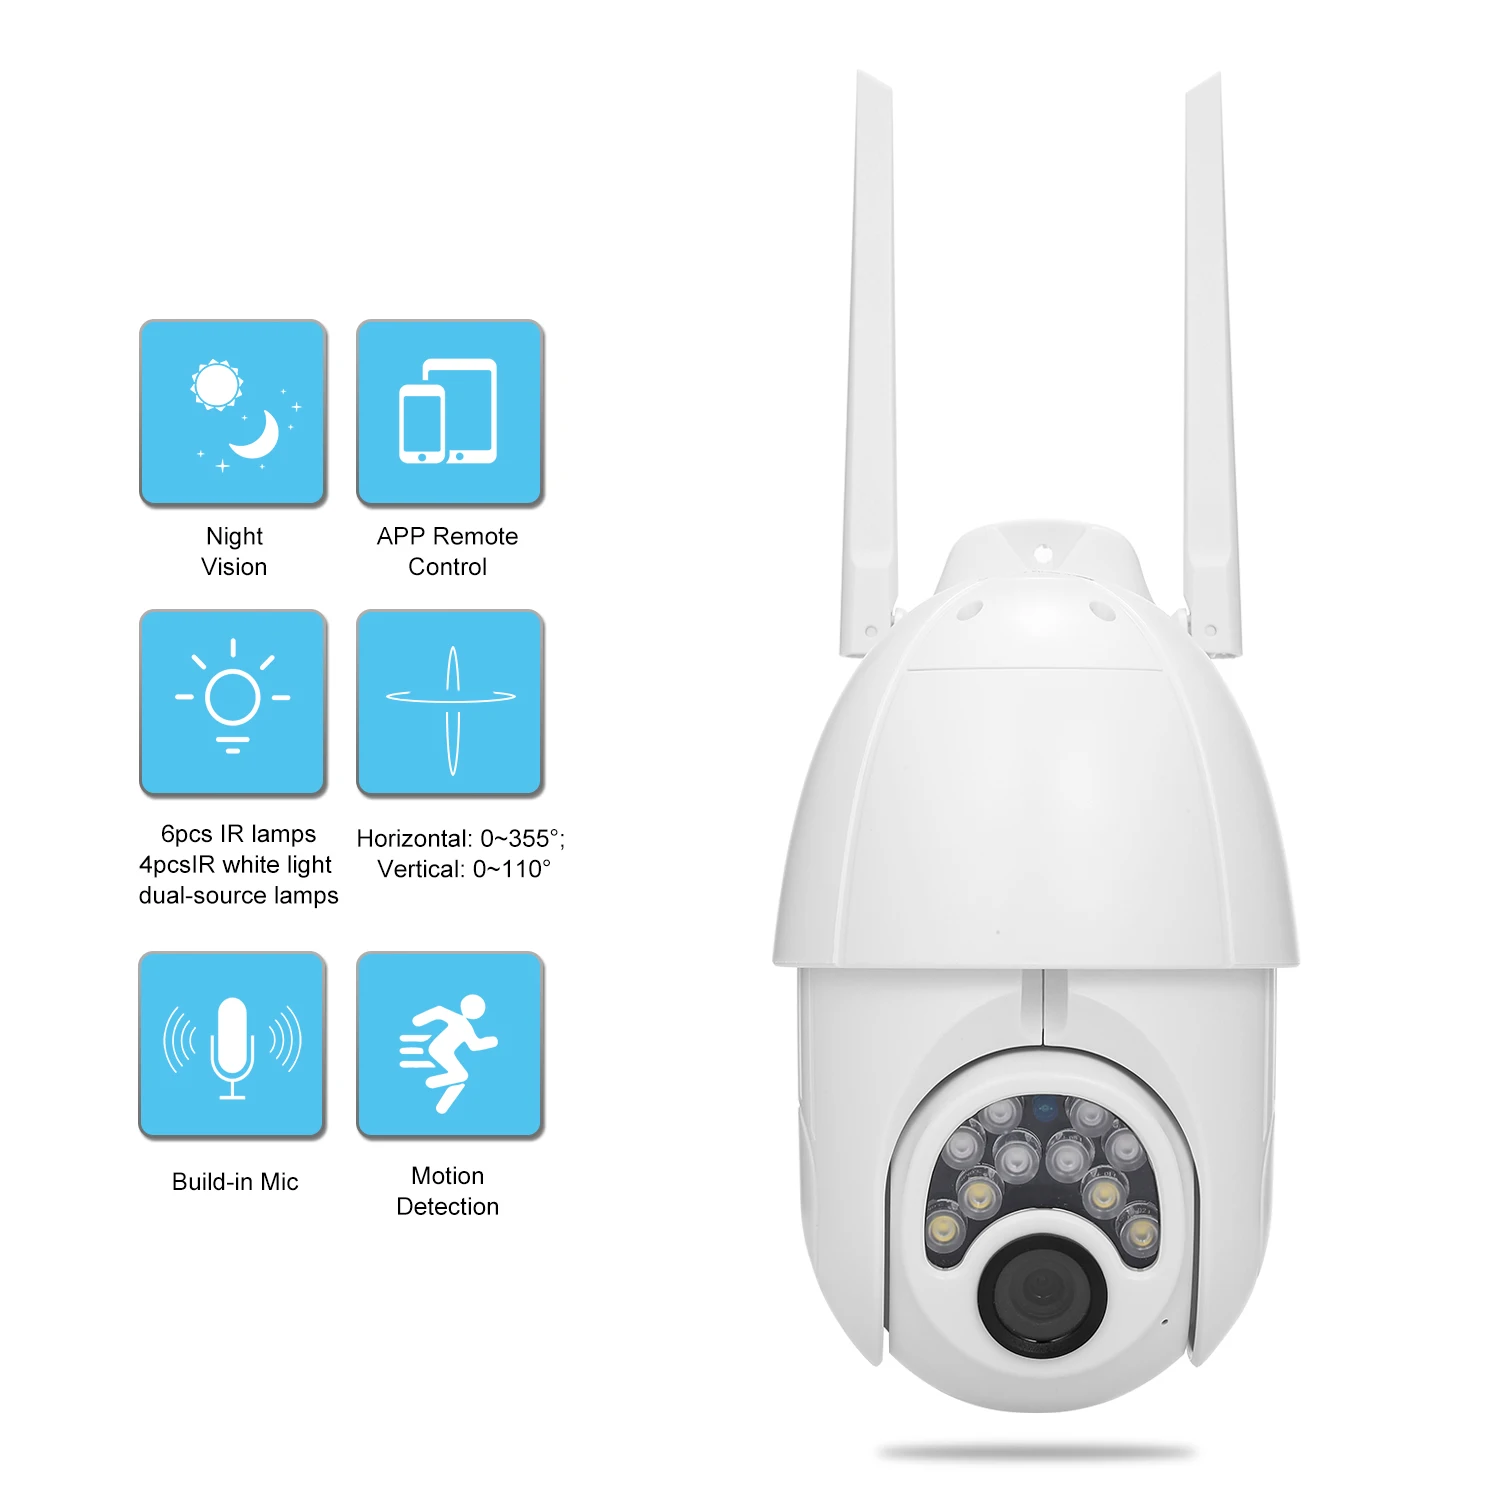 V380 wifi умная камера, монитор, крытая, открытая, 1080p купольная камера видеонаблюдения, камера безопасности s Home Surveilance, IR-CUT, слот для карт памяти TF